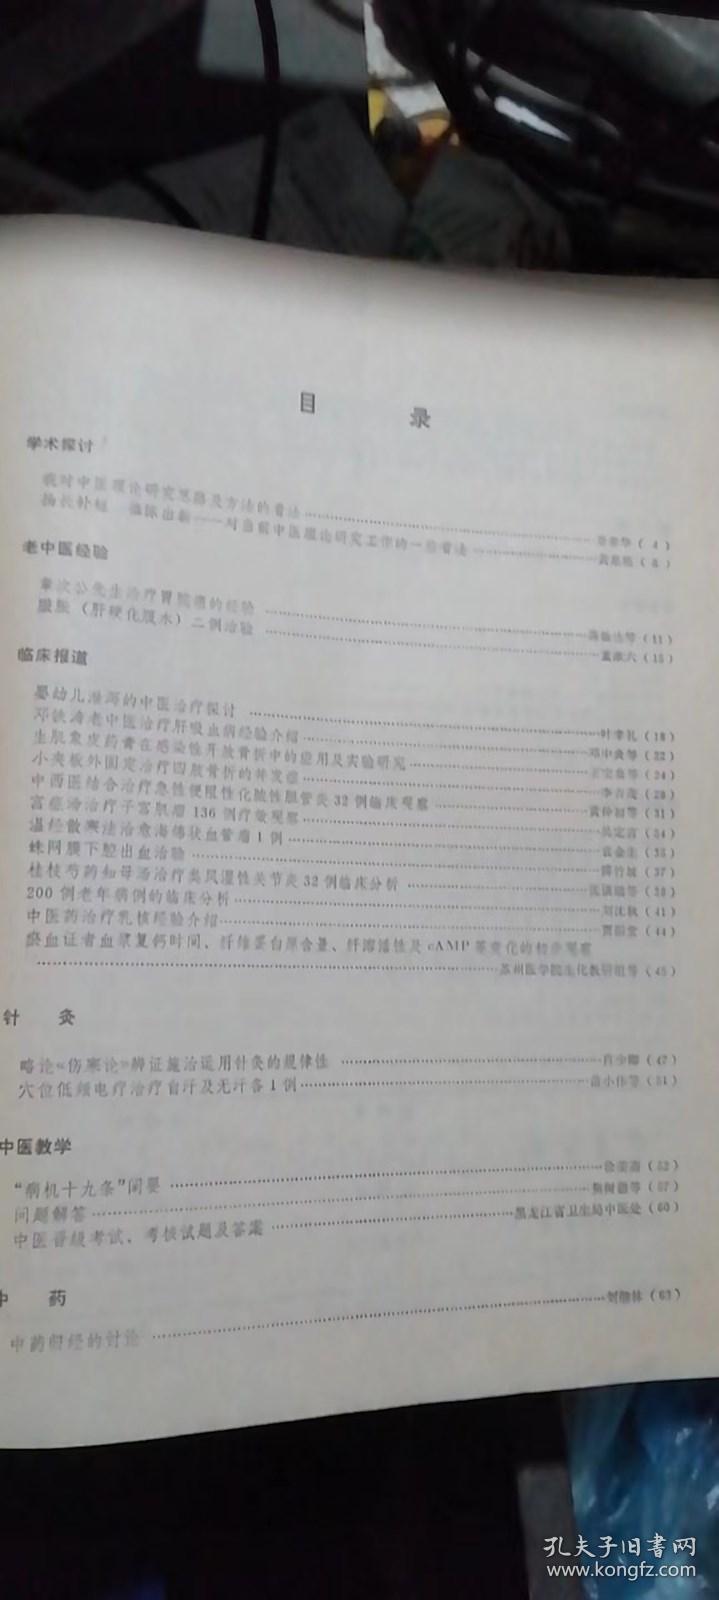 中医杂志1981.1